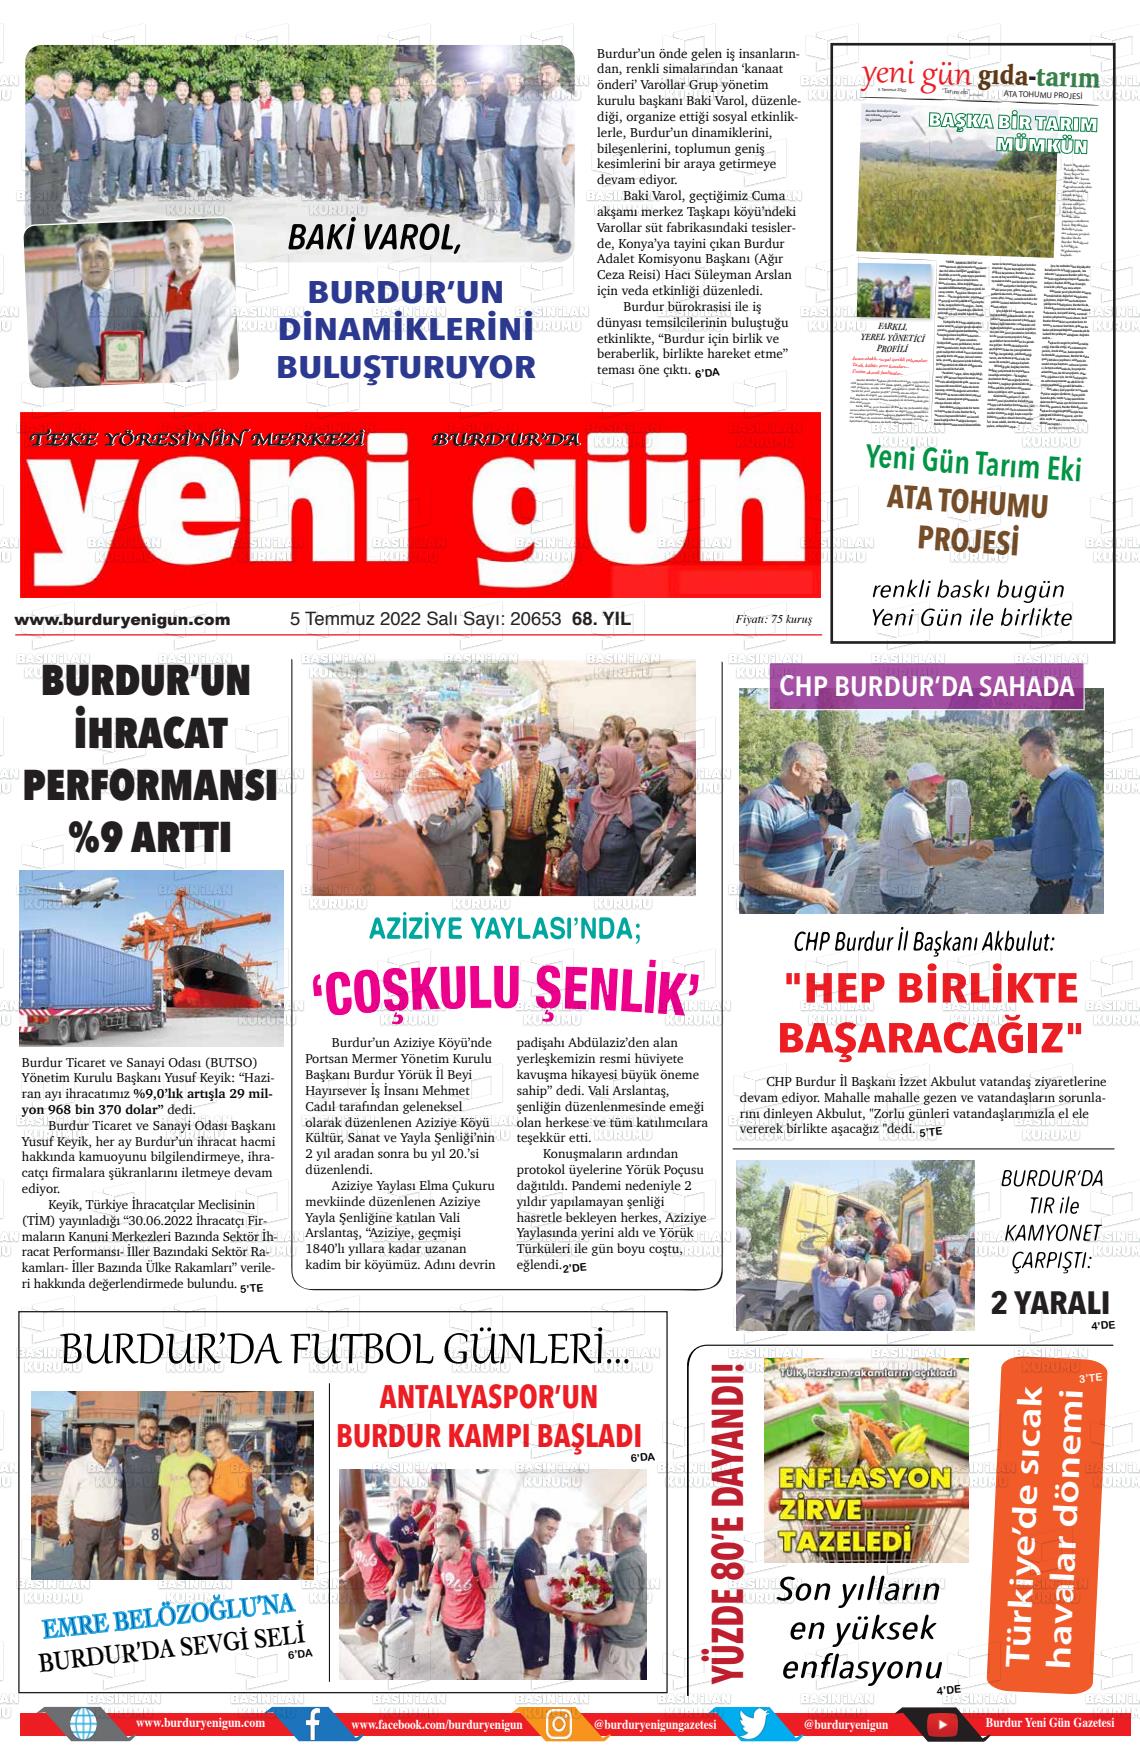 05 Temmuz 2022 Burdur Yeni Gün Gazete Manşeti